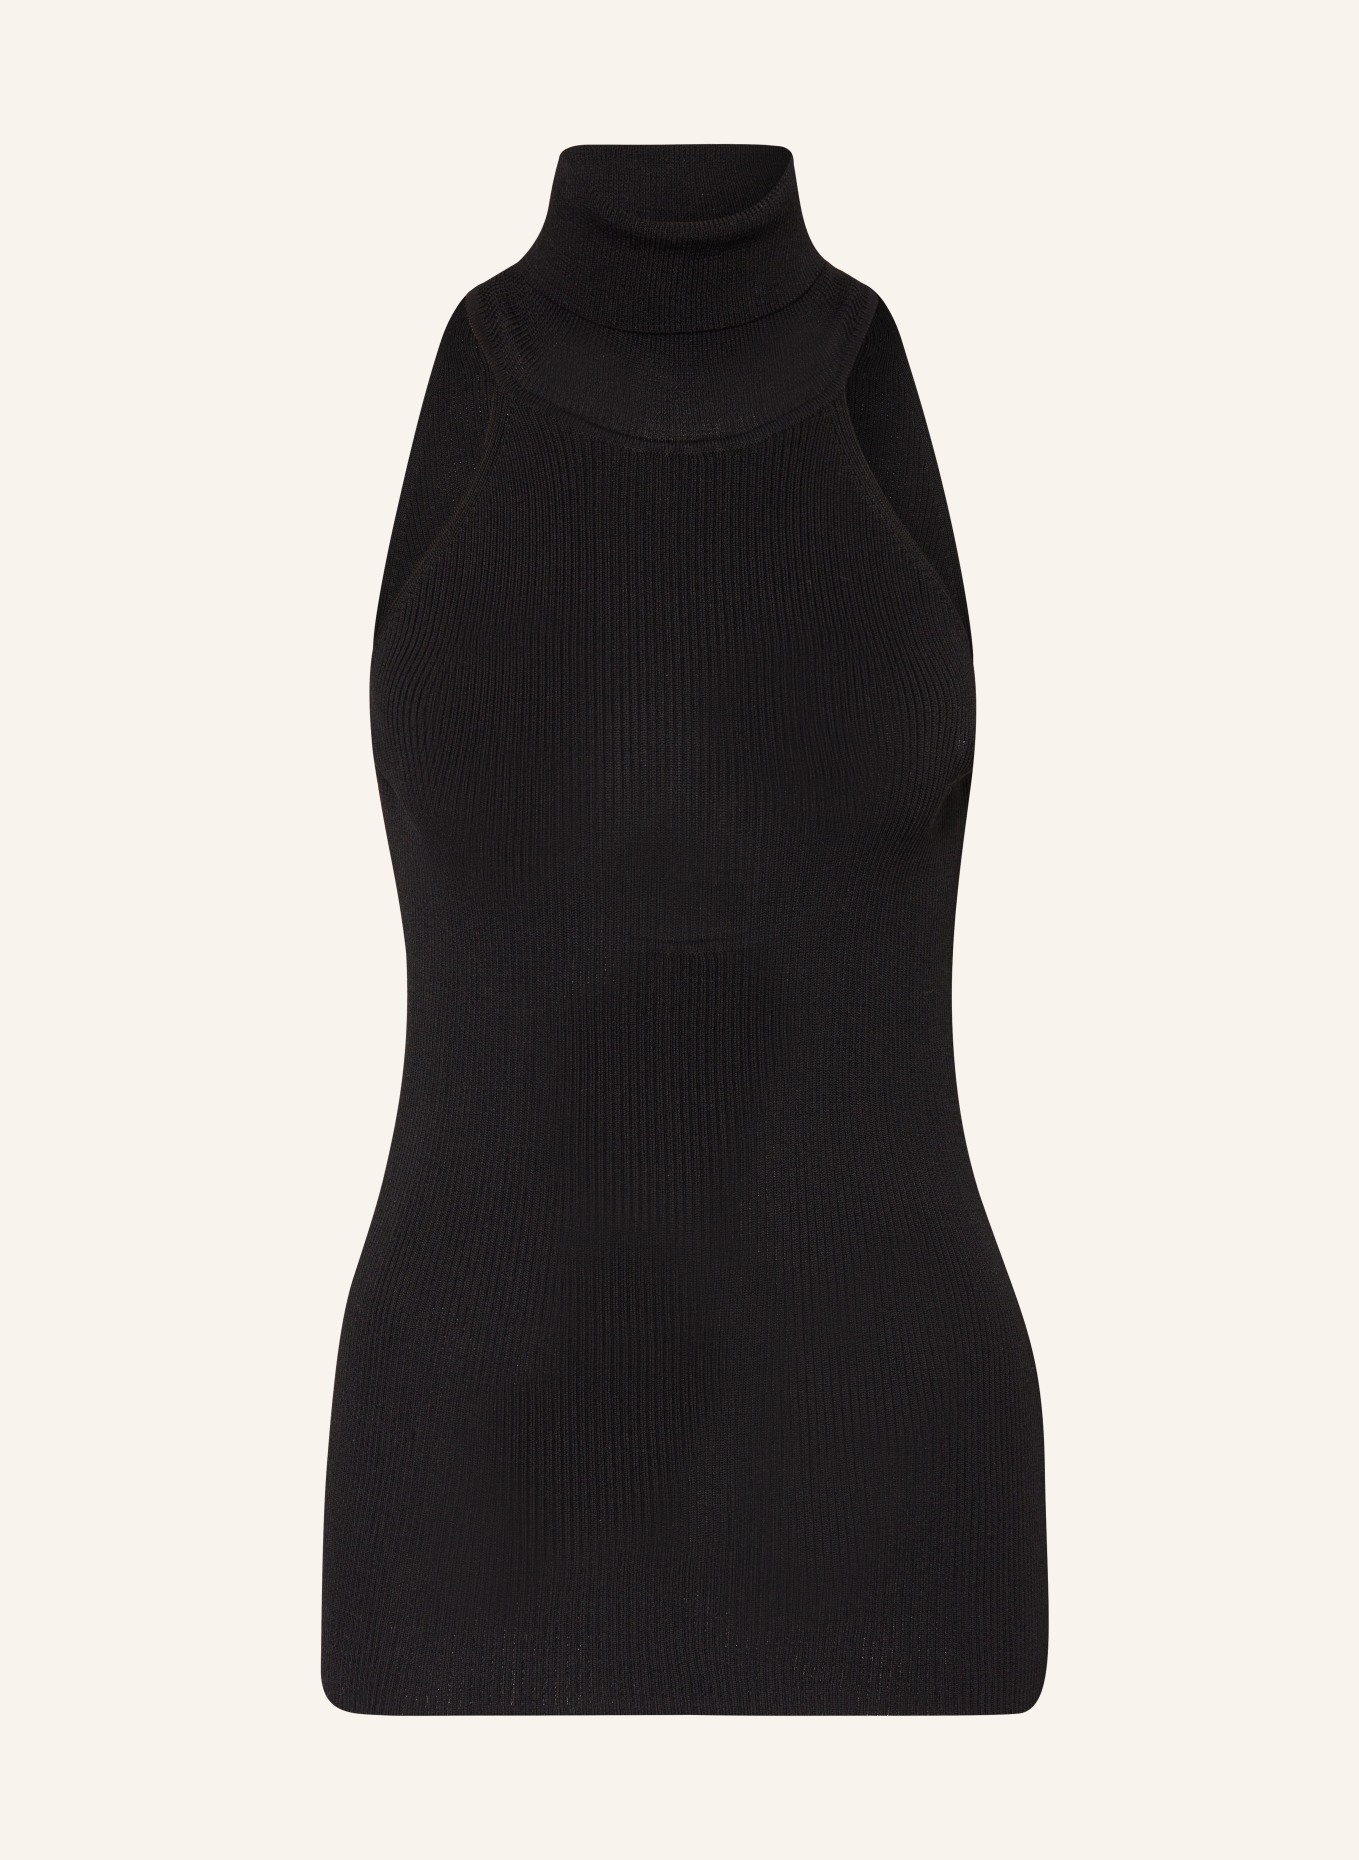 Herskind Knit top BO, Color: BLACK (Image 1)